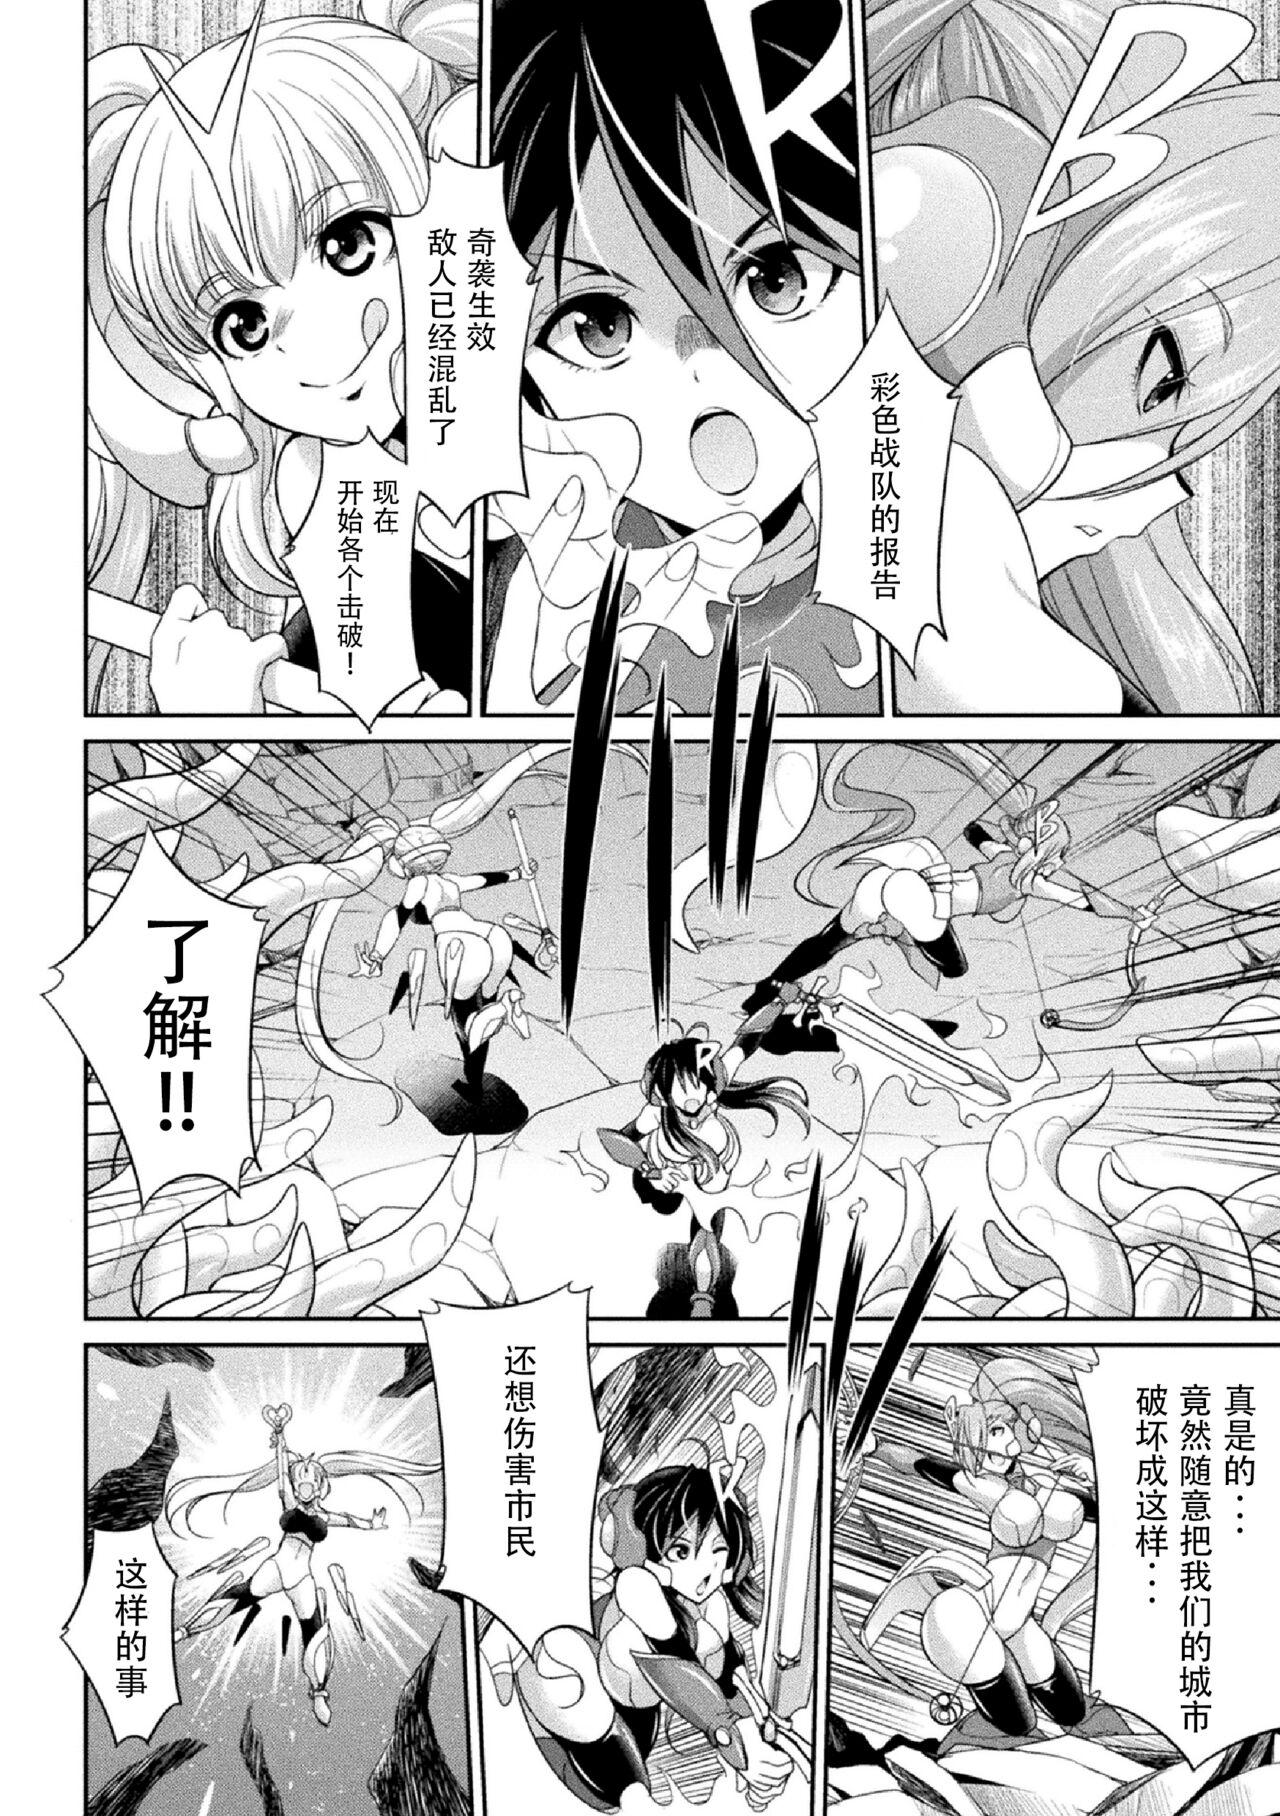 Ball Sucking Tokumu Sentai Colorful Force Seigi no Heroine vs Shokushu Joou! Futanari Choukyou Daikessen!? Gets - Page 8